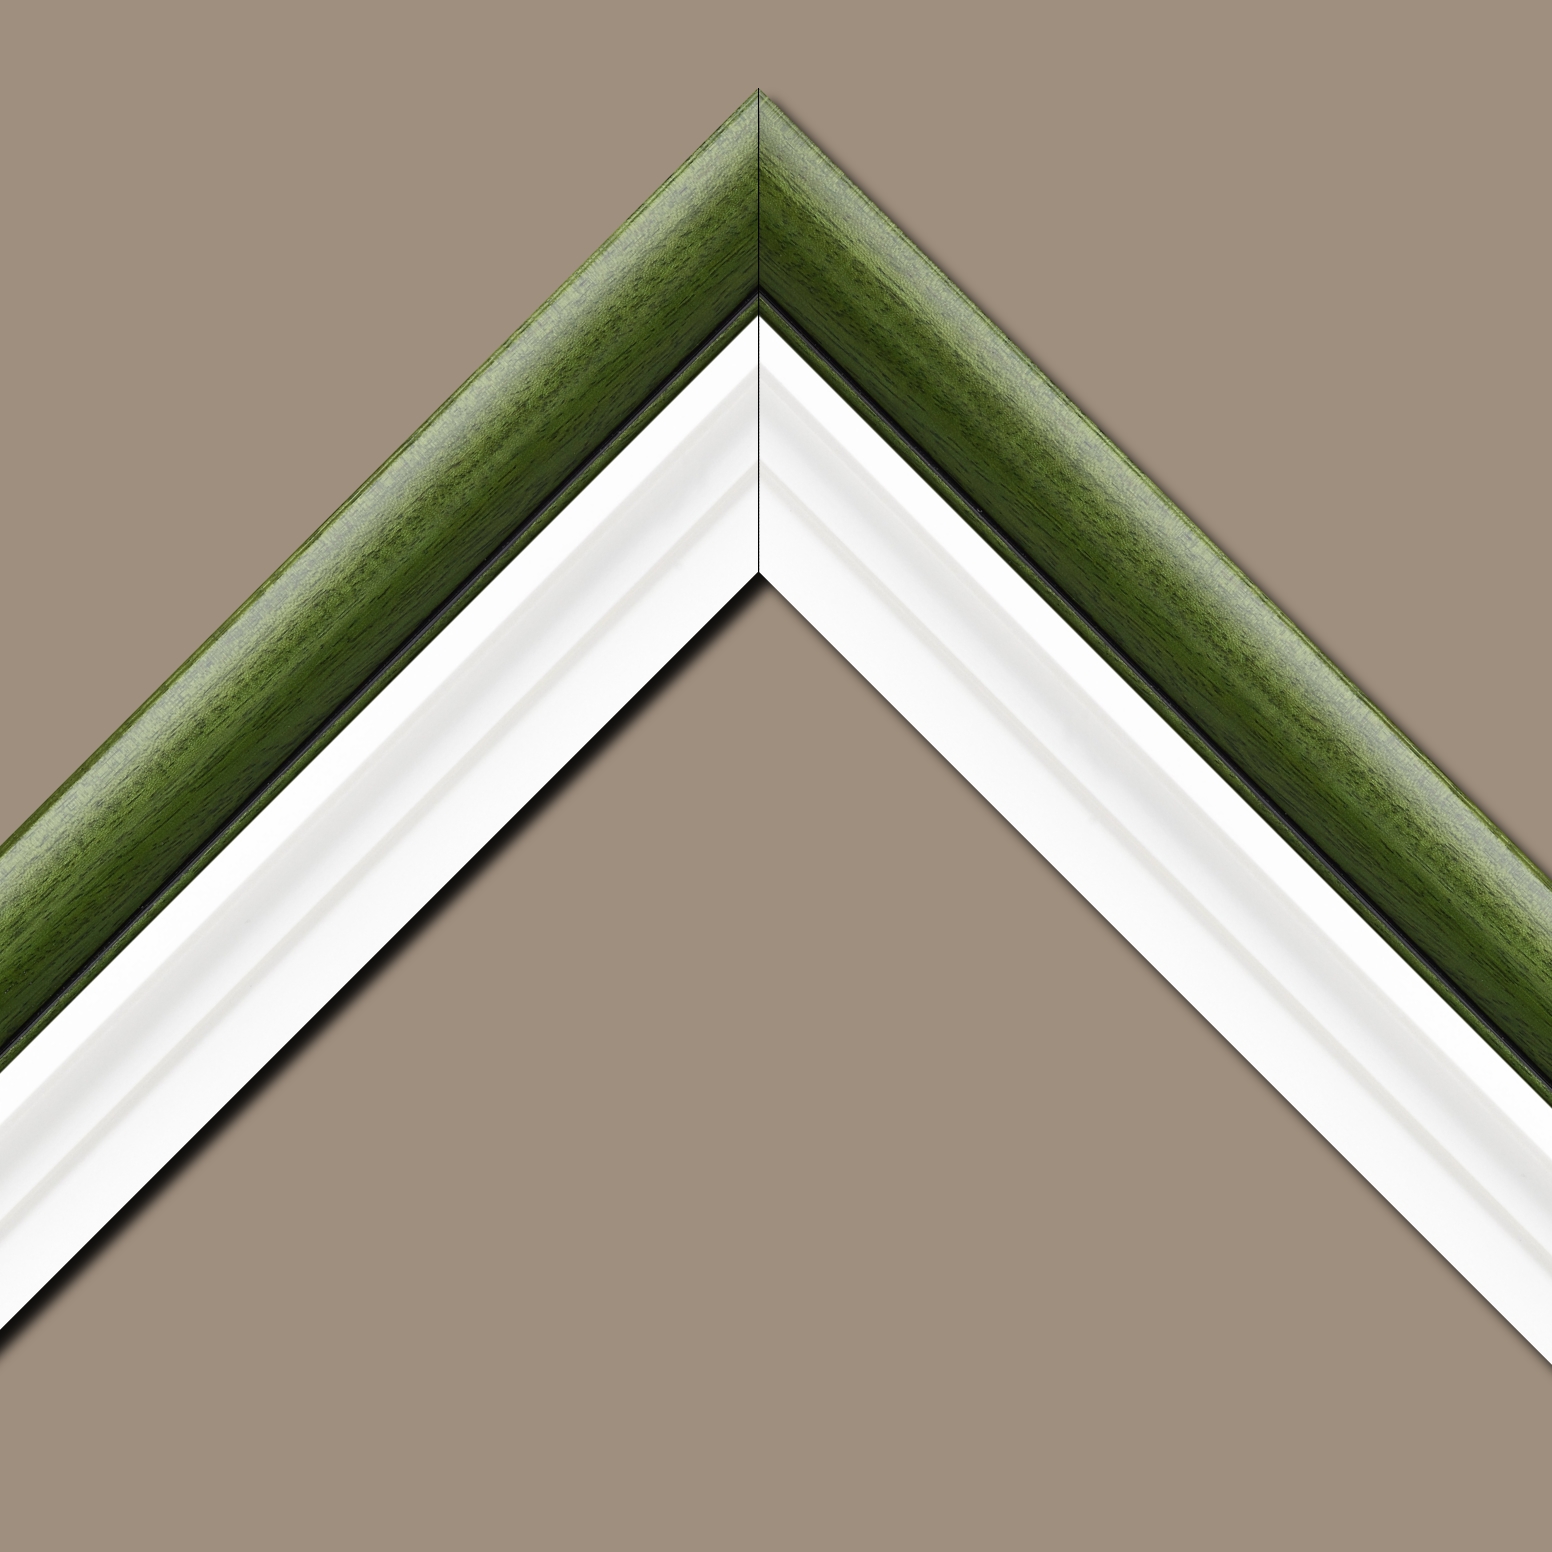 Caisse américaine pour peintures  americaine bois blanc vert — 90 x 90